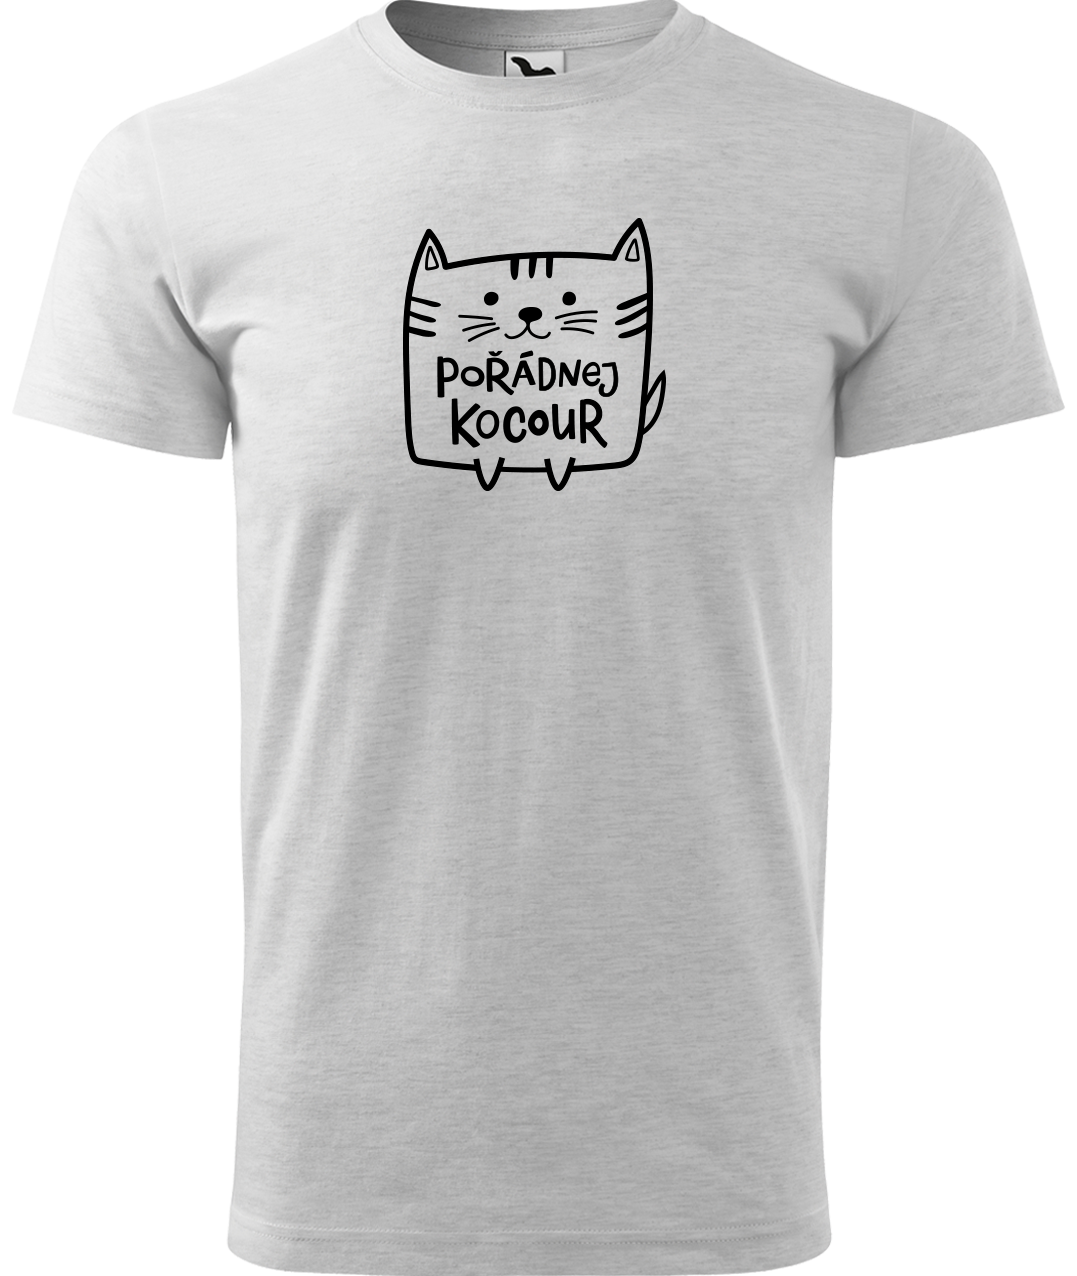 Pánské tričko s kočkou - Pořádnej kocour Velikost: 3XL, Barva: Světle šedý melír (03)